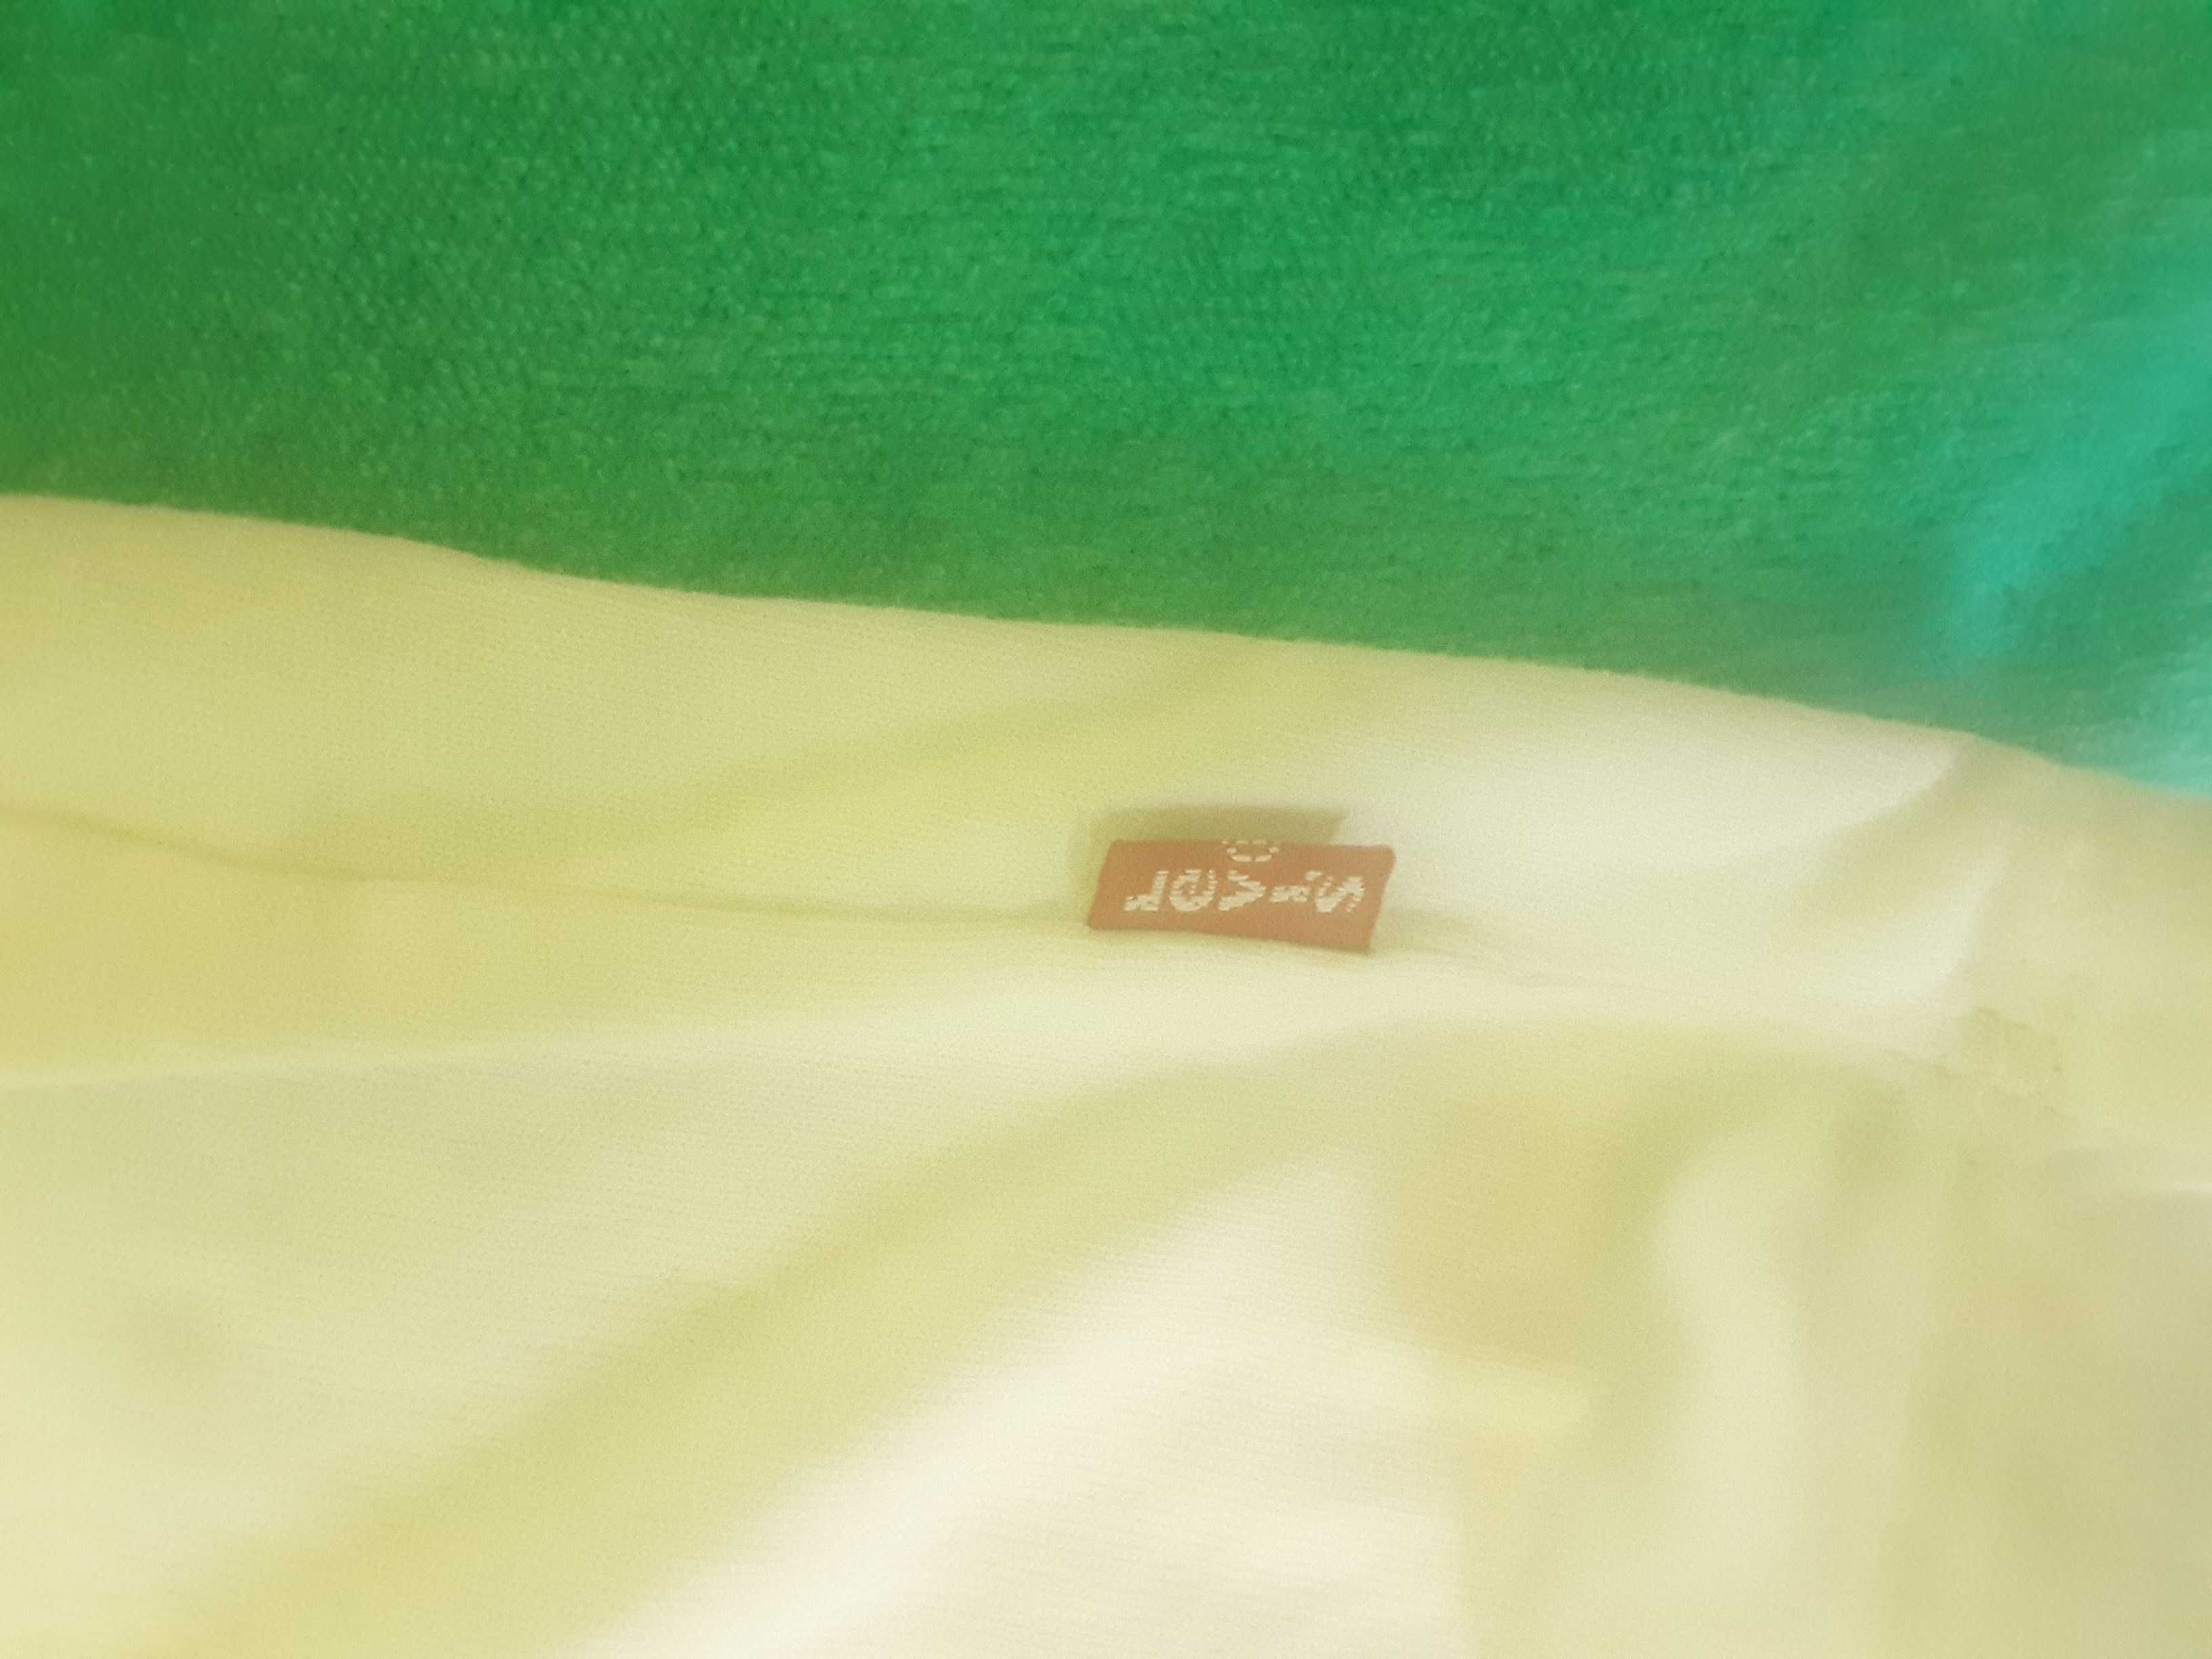 Levi's -NOWY T-shirt, rozmiar M (krótka-27 cm od pachy do doln. kraw.)